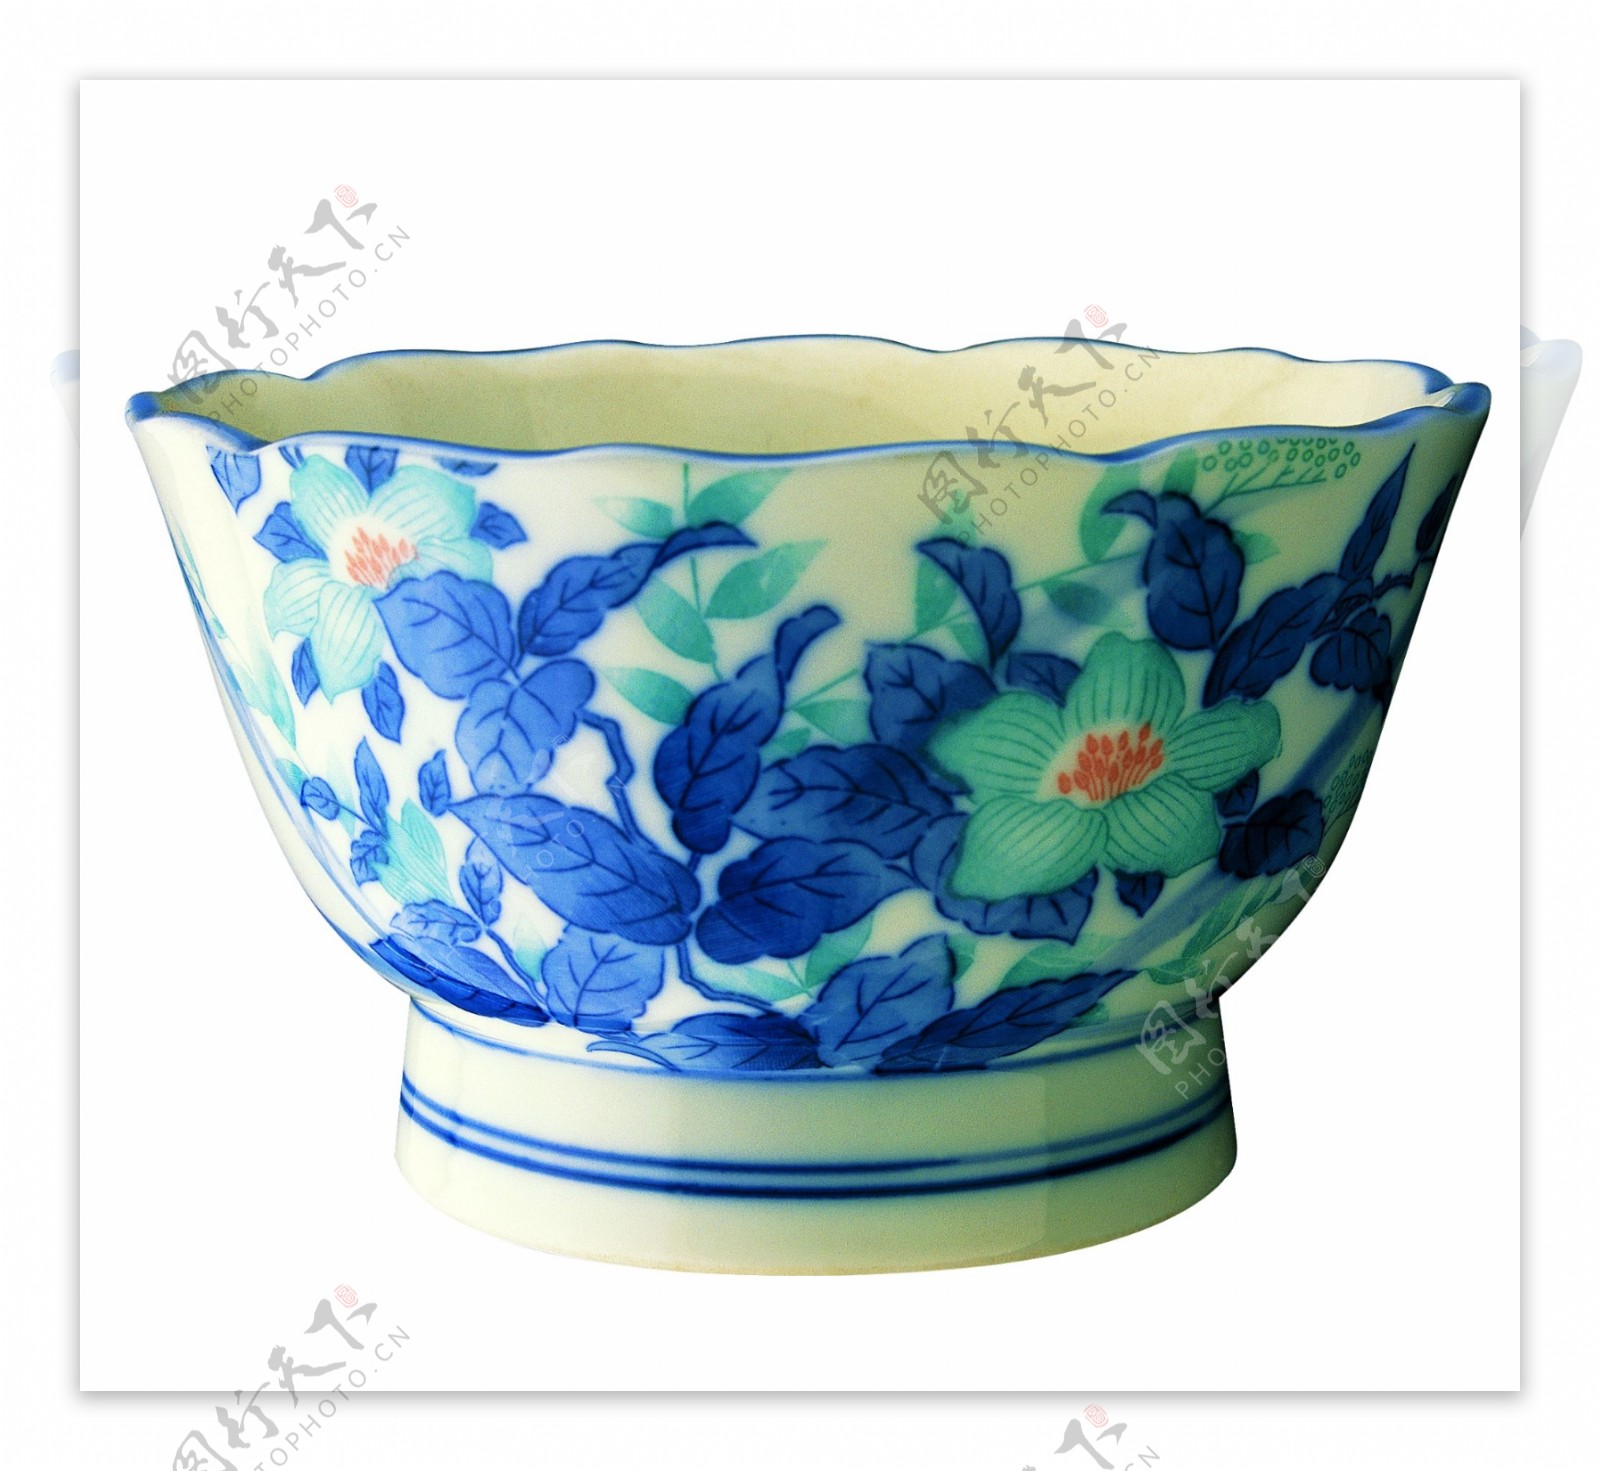 餐具荷叶边兰花瓷碗抠图格式